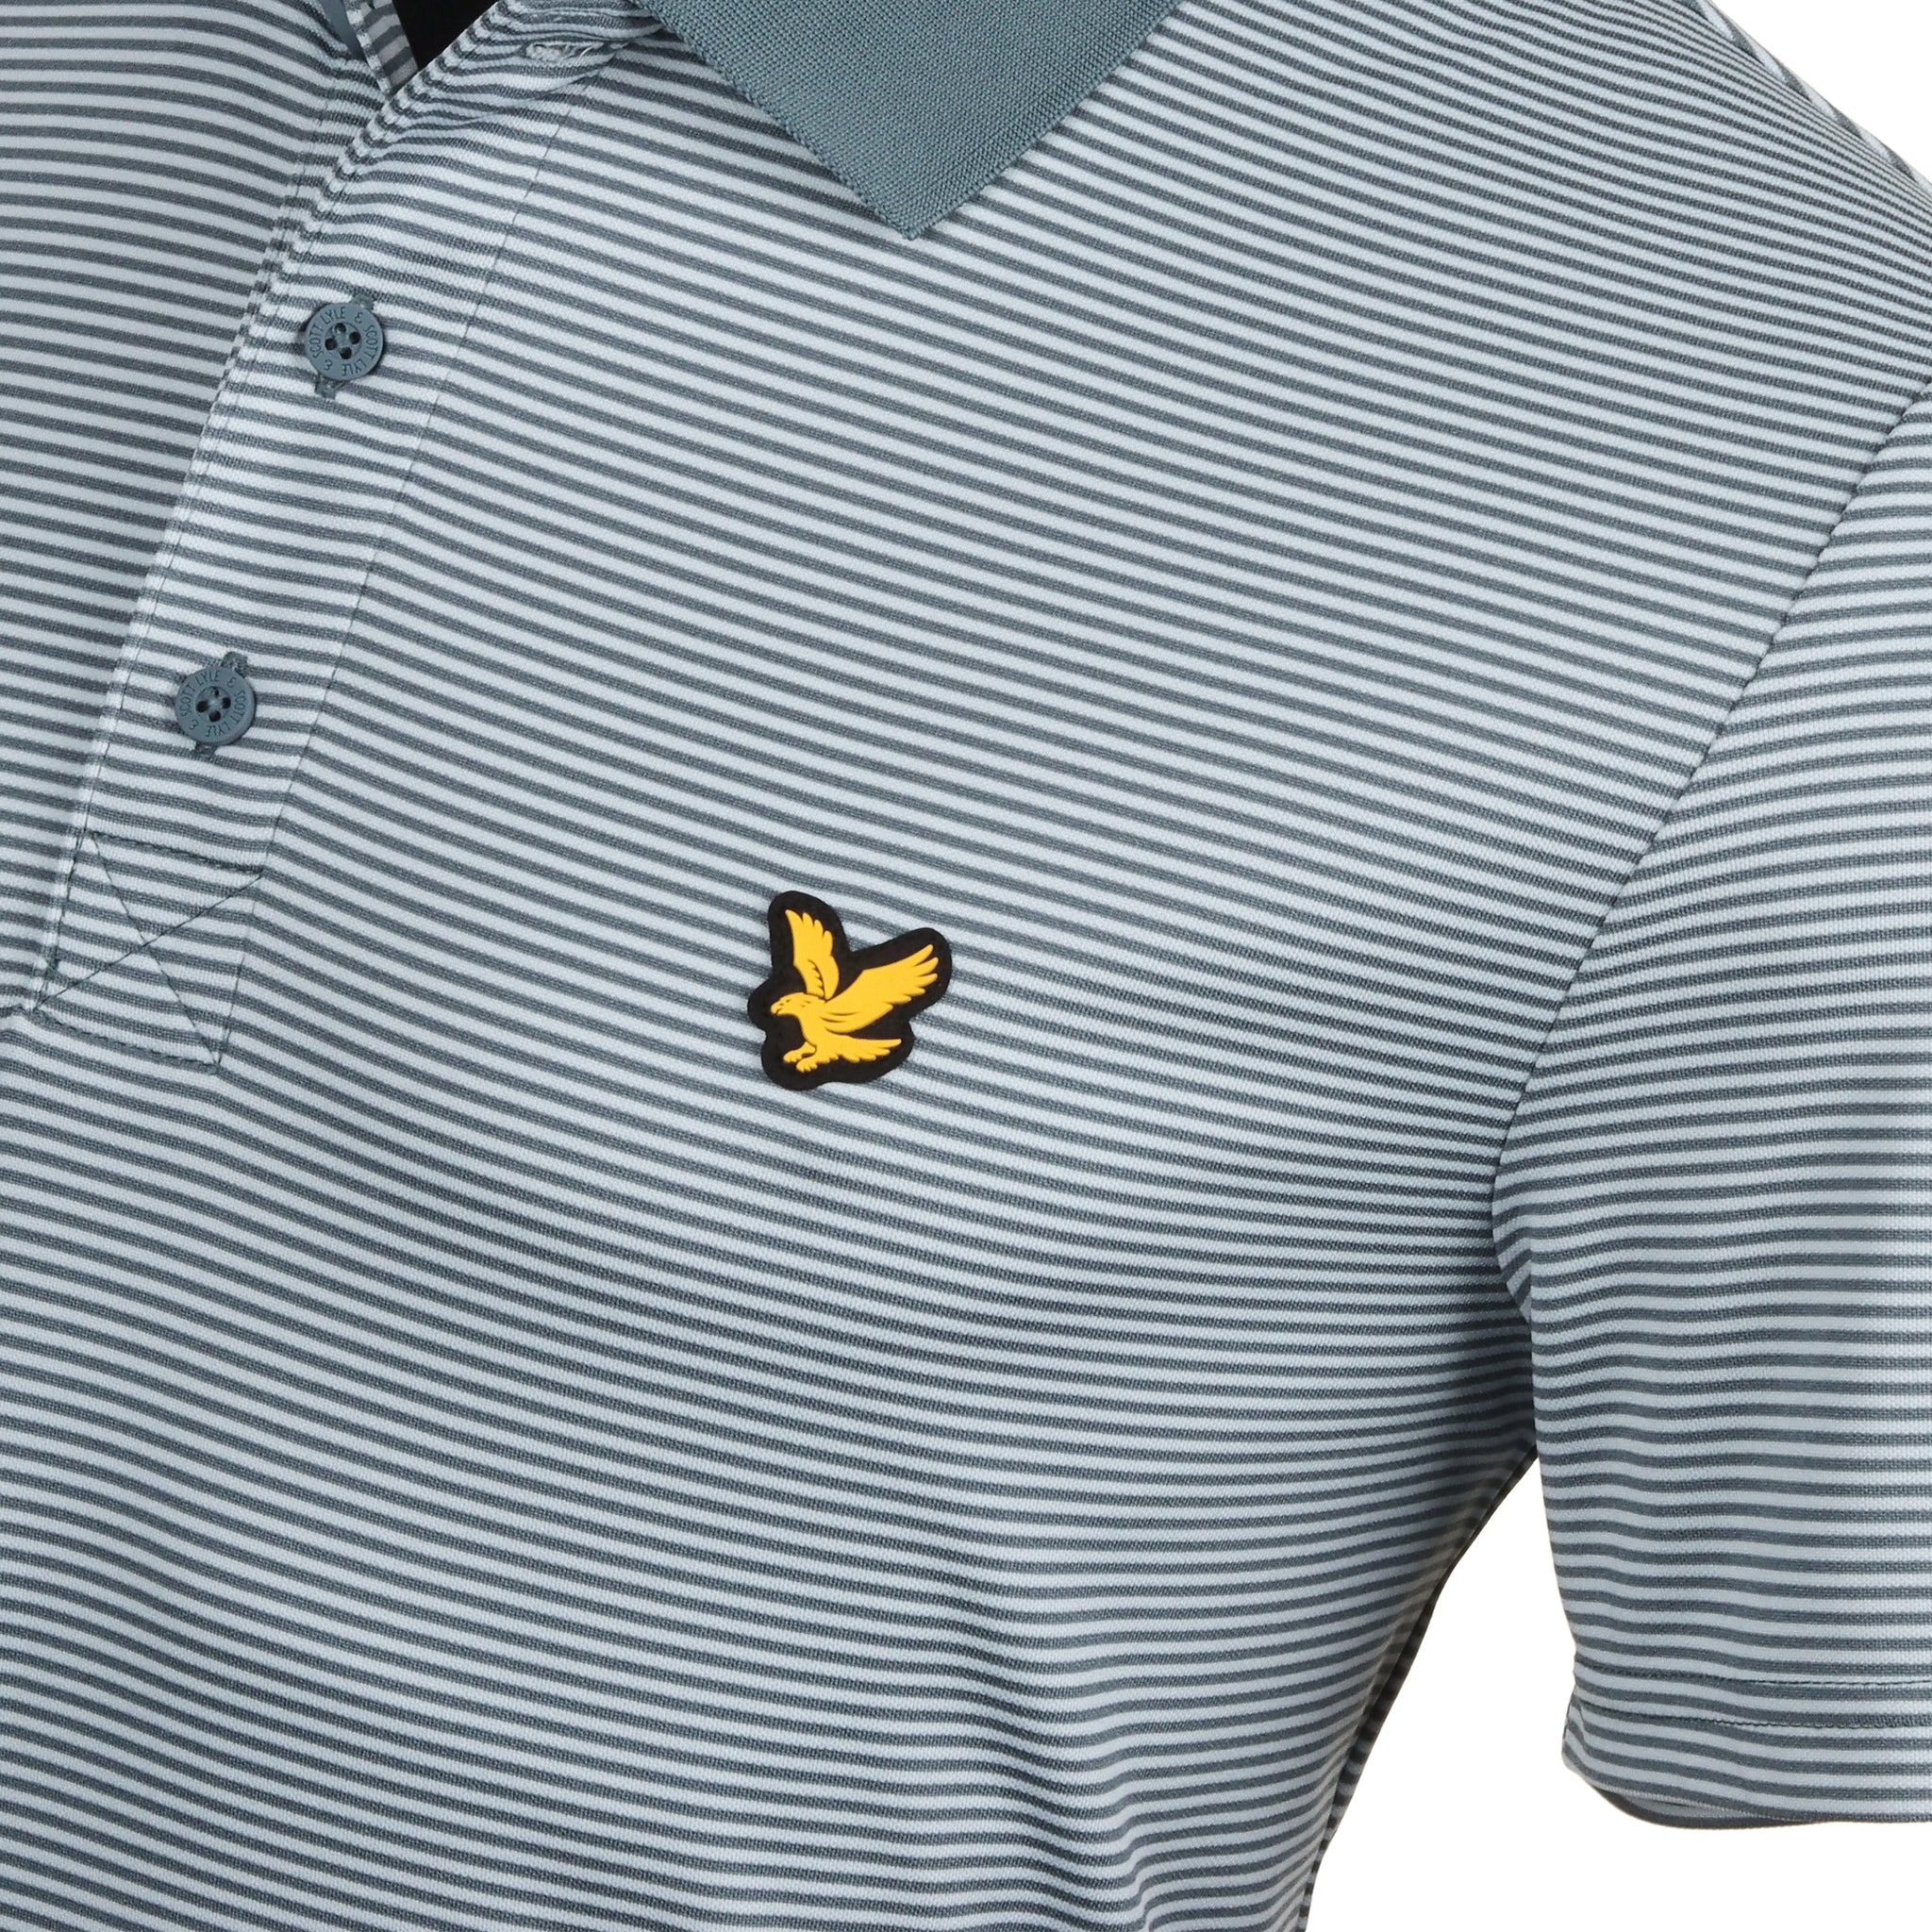 Lyle & Scott Golf Microstripe Polo Shirt